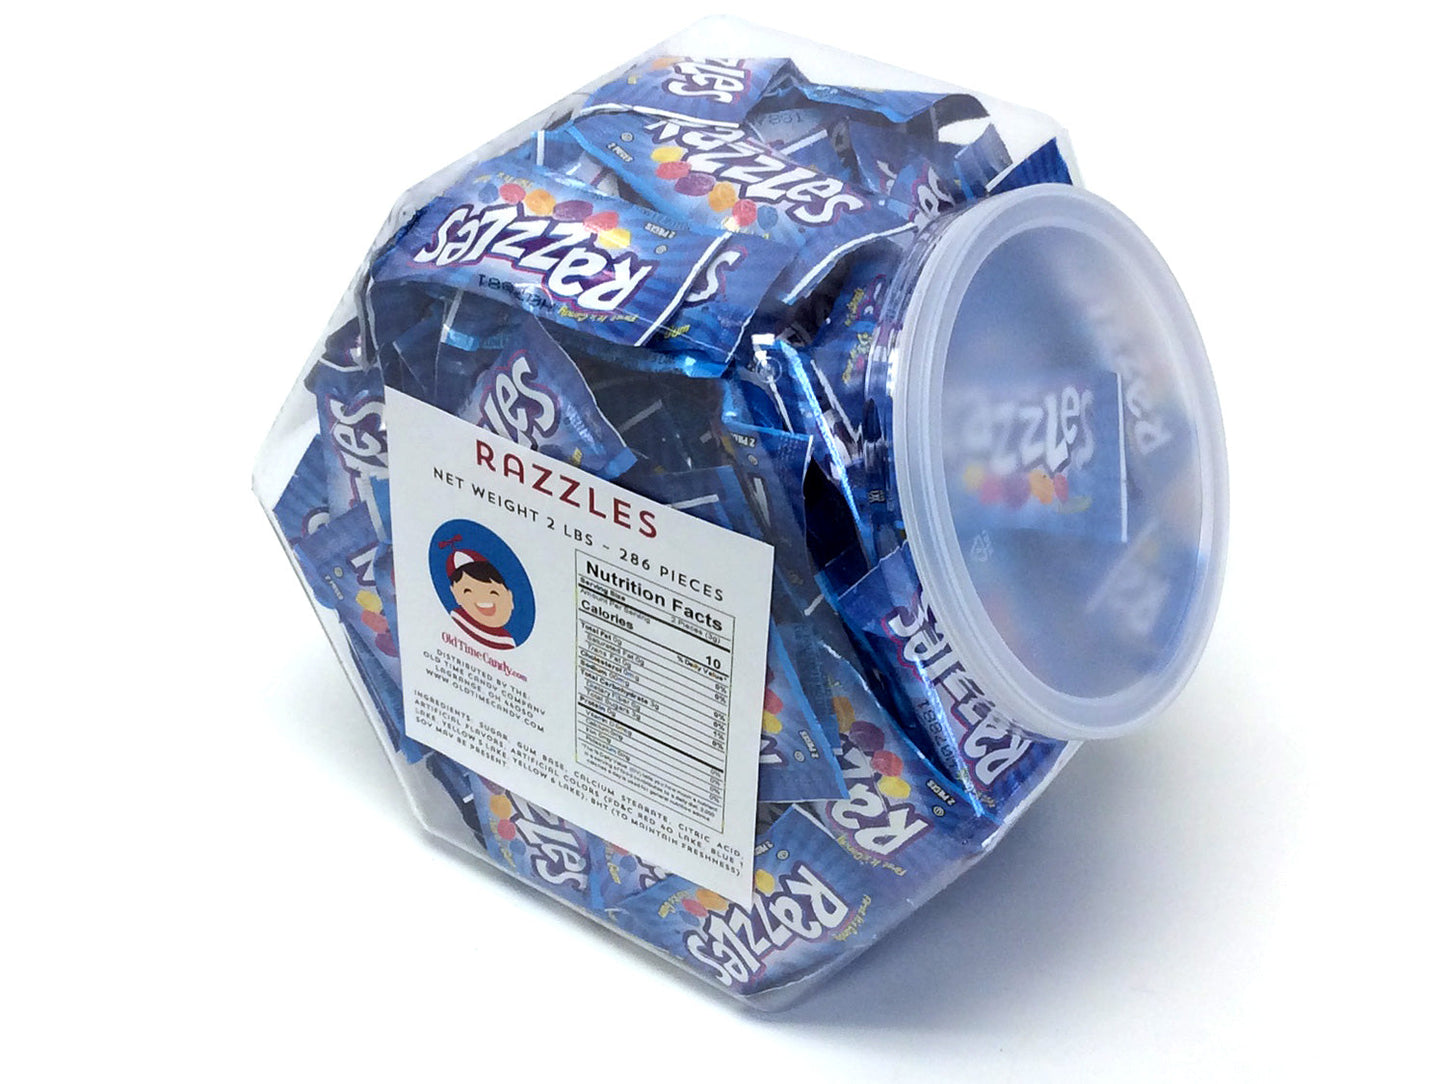 Razzles 2-piece pack - 2 lb Plastic Tub (286 ct)